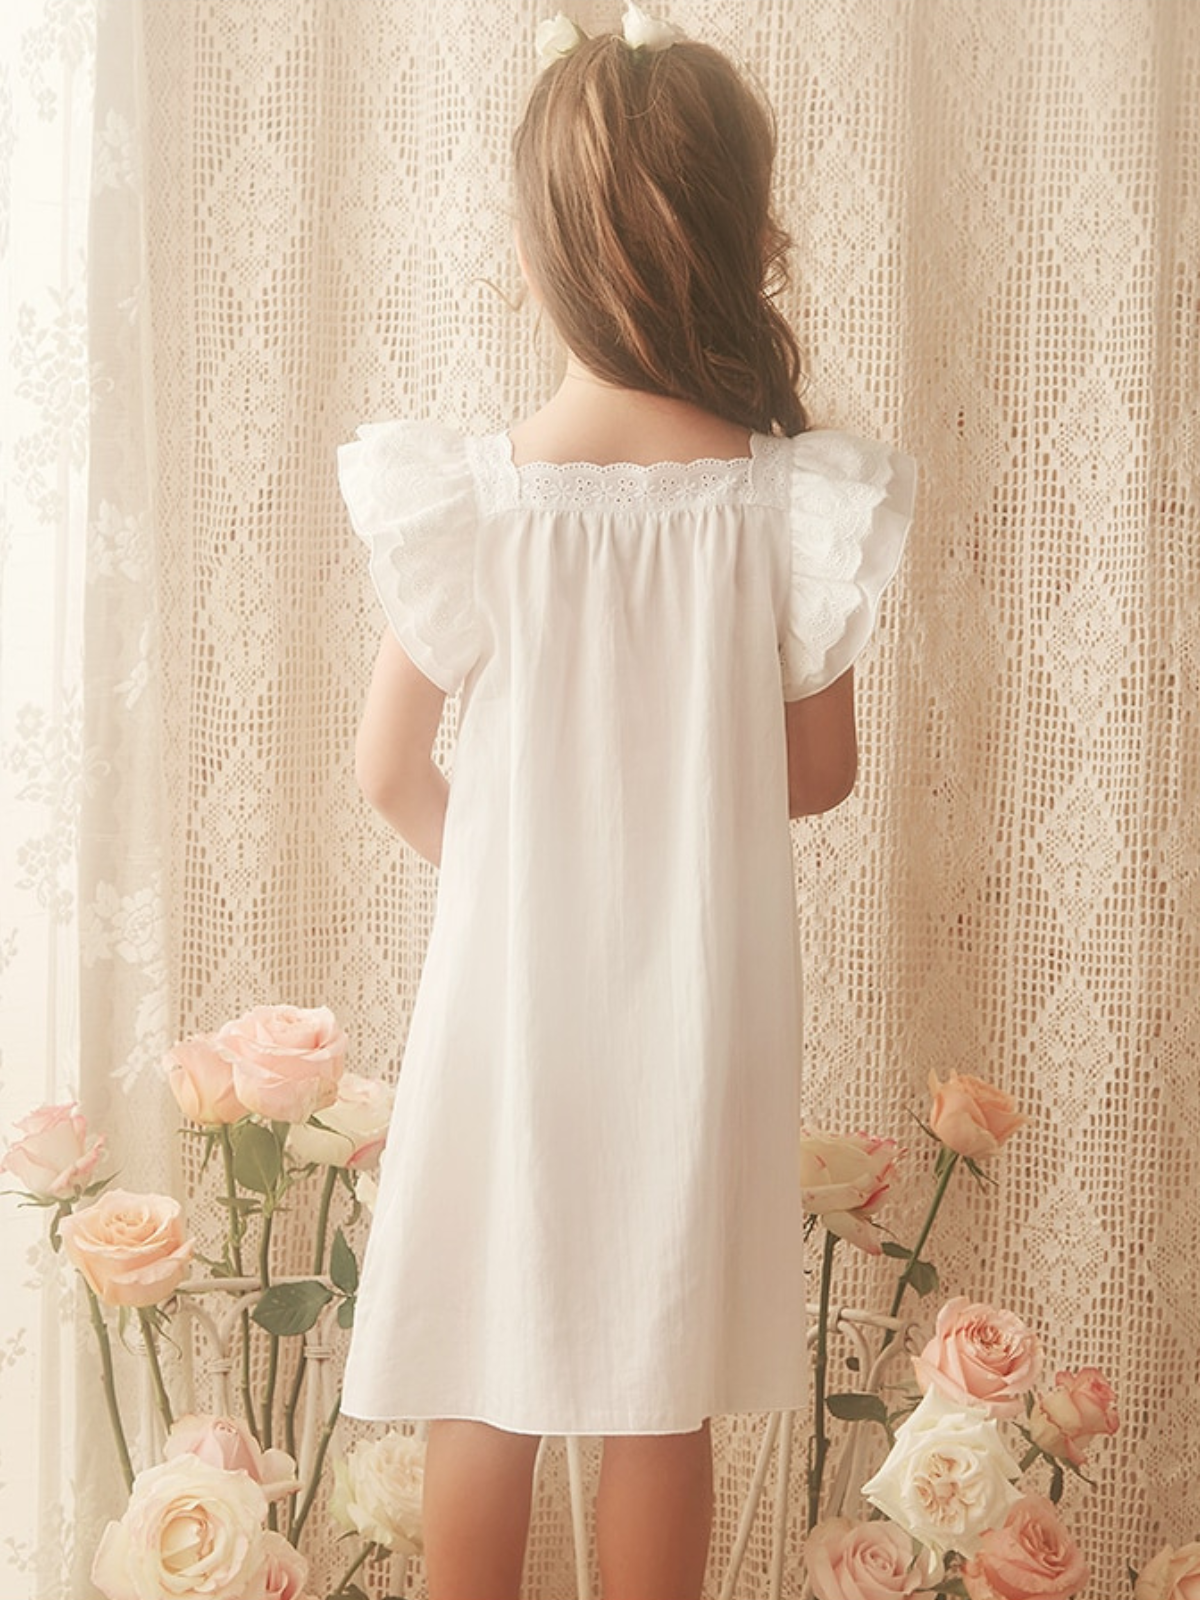 Mia Belle Girls Flutter Sleeve Lace Nightgown | Girls Loungewear